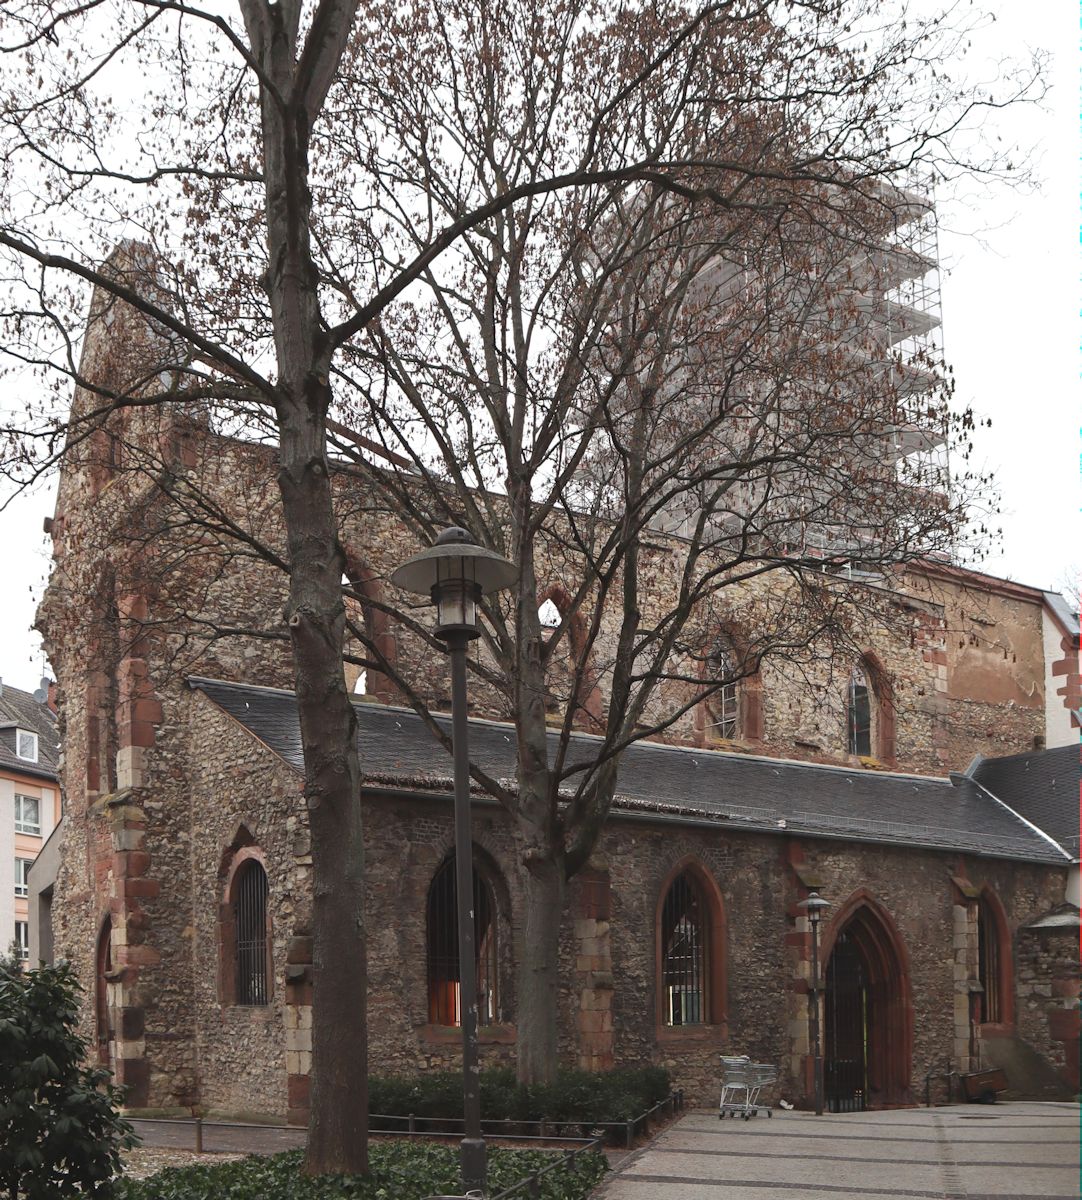 Kirche St. Christoph in Mainz, heute als Ruine und Mahnmal gegen Krieg erhalten